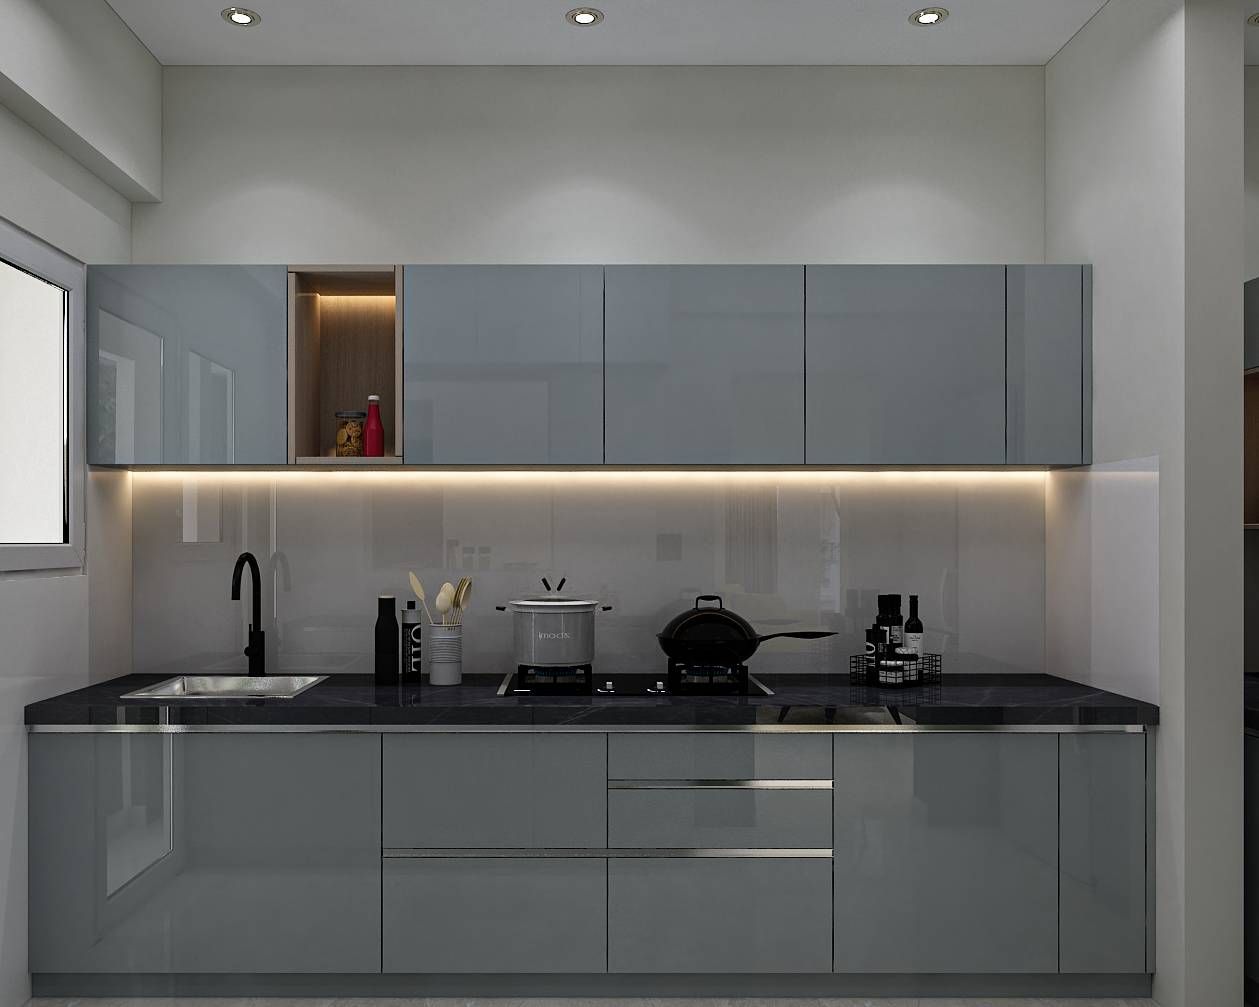 Modern Parallel Kitchen Interior Design With Strip Lighting